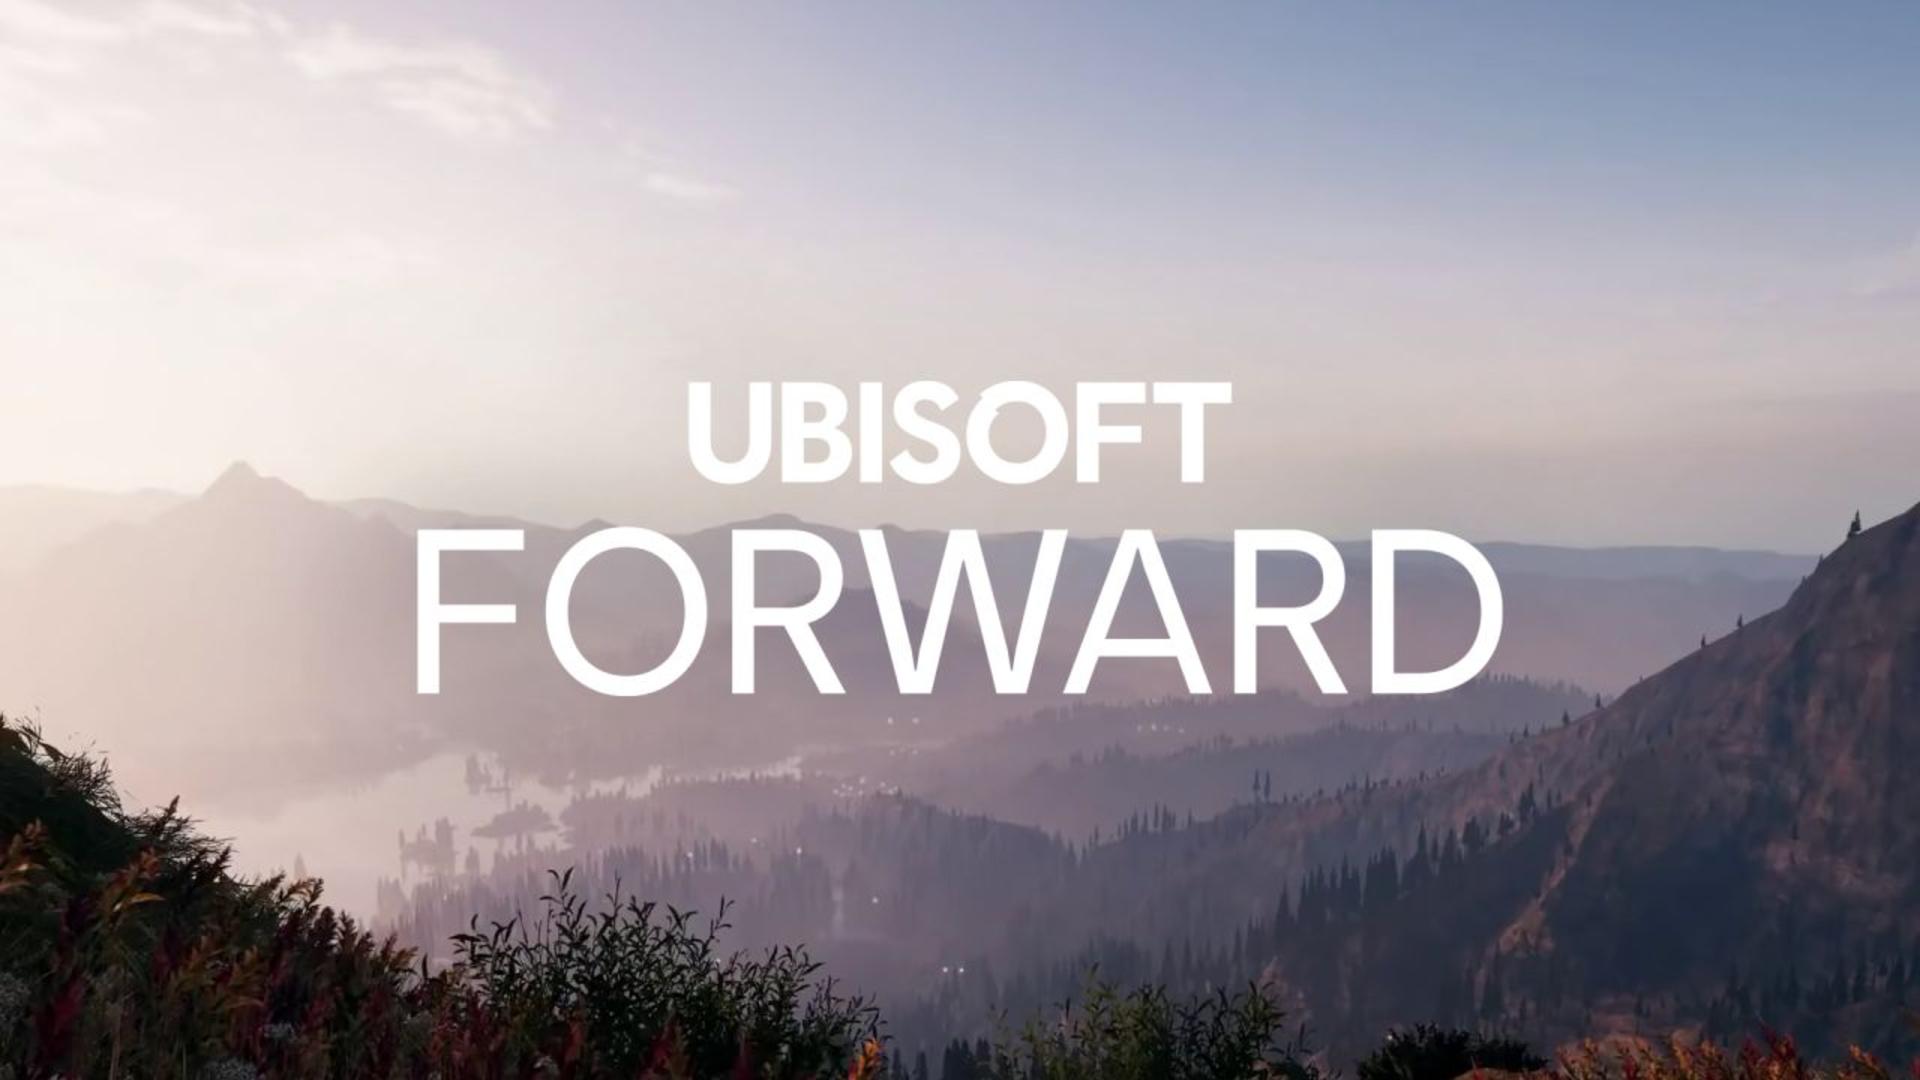 Ubisoft forward será o evento online em julho | f19f21a1 ubisoft forward | cassino online | ubisoft forward cassino online